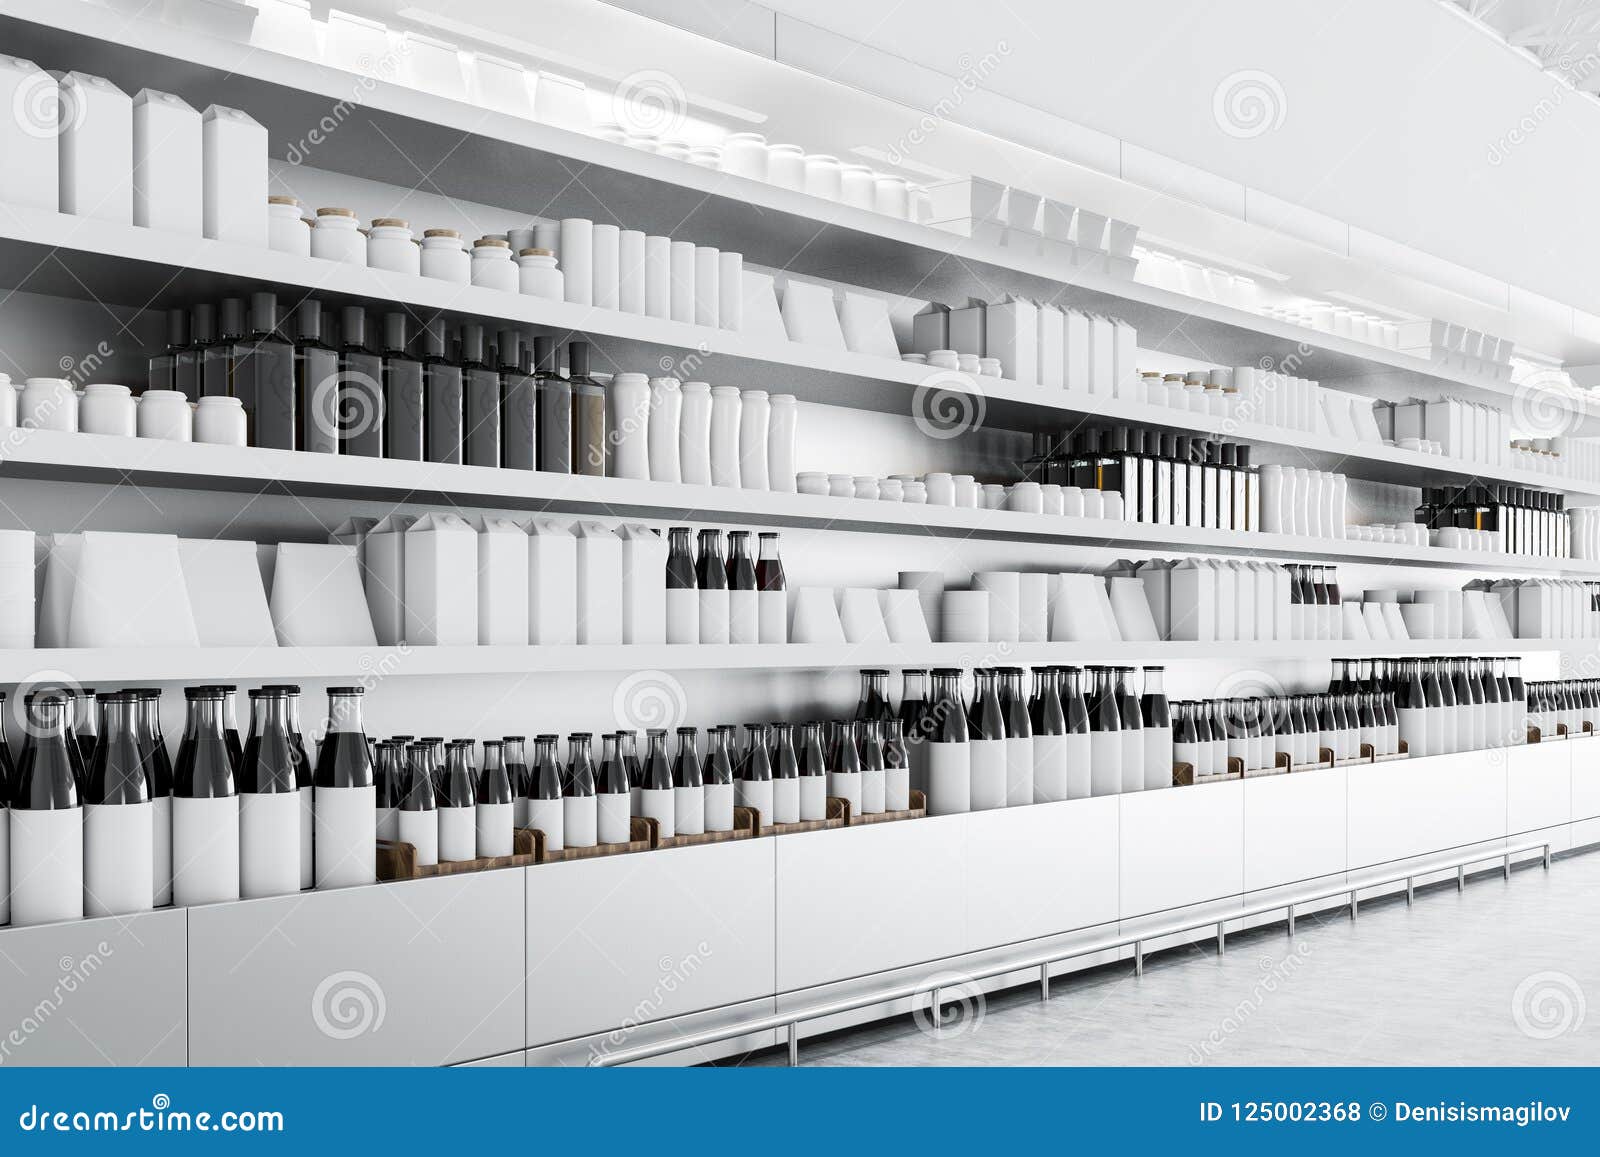 Download Supermarket Shelves With Mock Up Goods Stock Illustration Illustration Of Cans Design 125002368